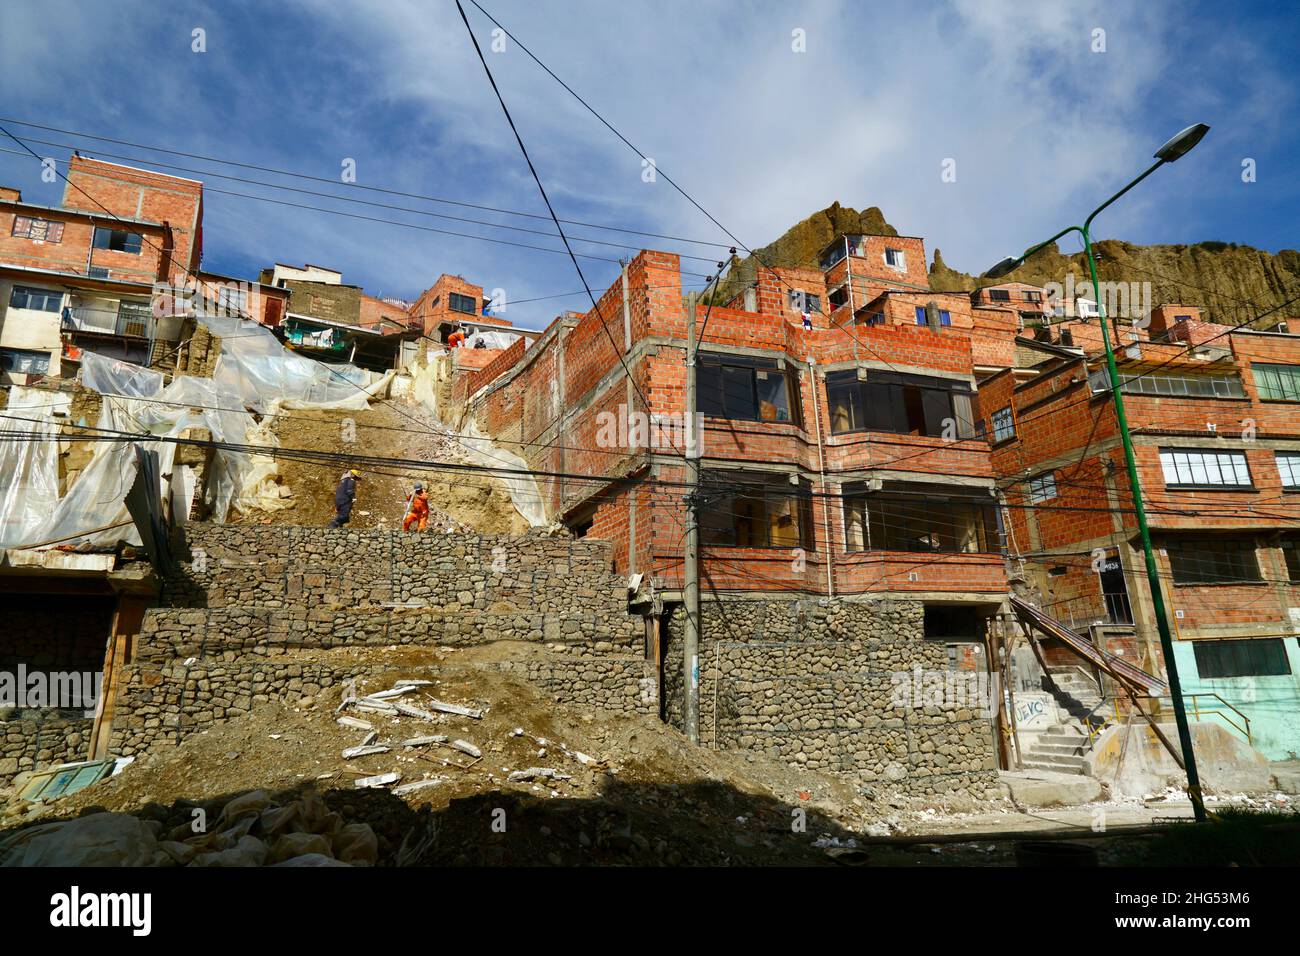 La Paz, Bolivia: Trabajadores municipales que se encuentran en una ladera y han dañado casas con jaulas llenas de rocas / gaviones en un sitio en Tembladerani / distrito de Cotahuma, donde la excavación no autorizada y el movimiento de la tierra causaron el colapso de parte de la ladera. Muchos de los barrios de la ladera de La Paz han sido construidos en áreas inestables sin permisos adecuados o controles de construcción. El hundimiento y la erosión que provocan el derrumbe de los deslizamientos de tierra y las casas son comunes, especialmente en la estación lluviosa. En este incidente, hubo que demoler 2 casas y otras 6 resultaron gravemente afectadas. Foto de stock